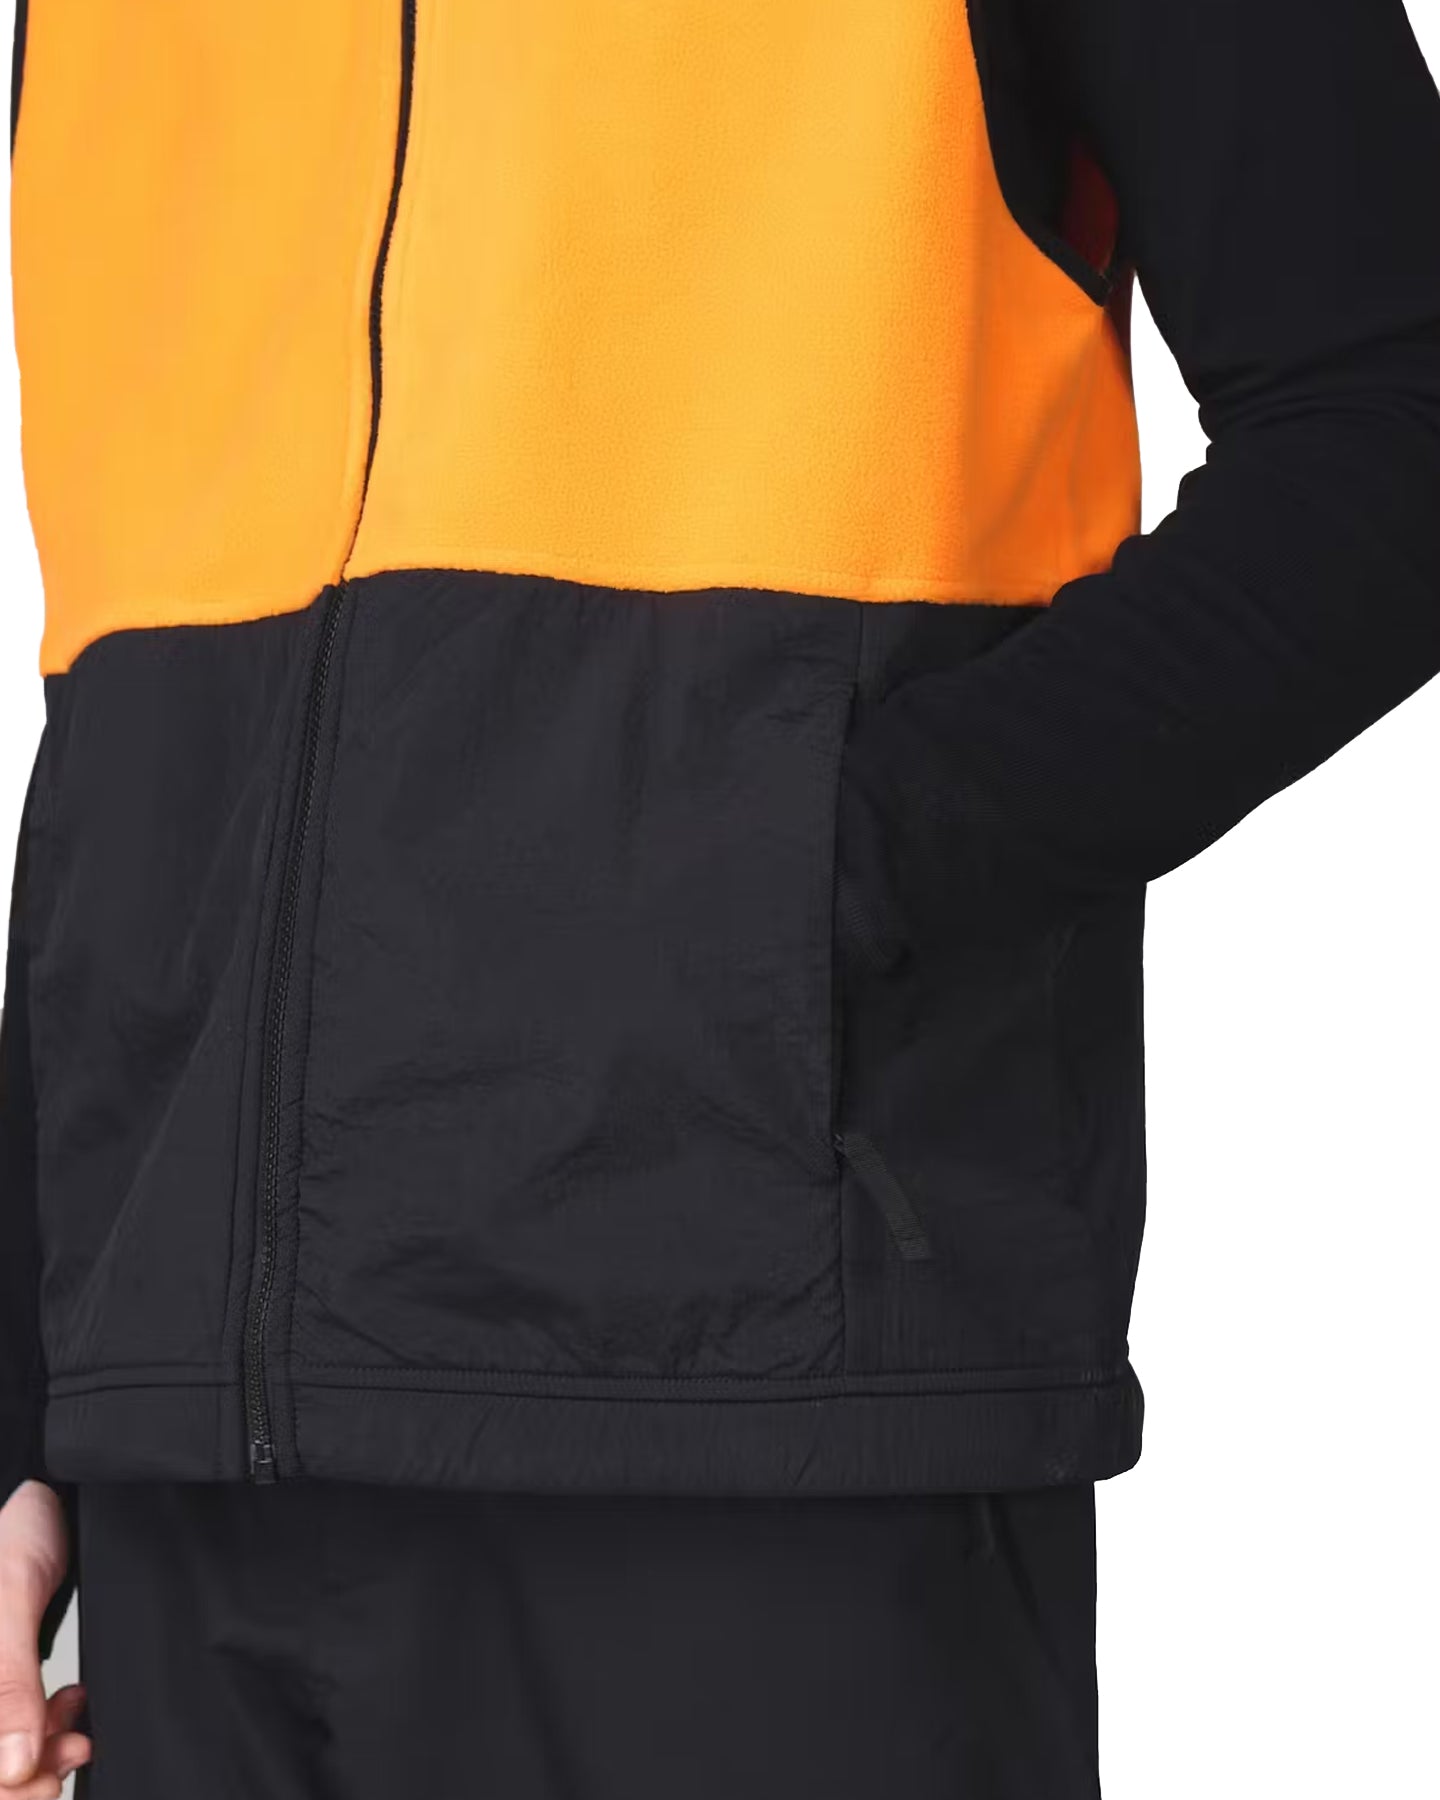 Beyond Medals Fleece Vest - Orange Jackets - SnowSkiersWarehouse